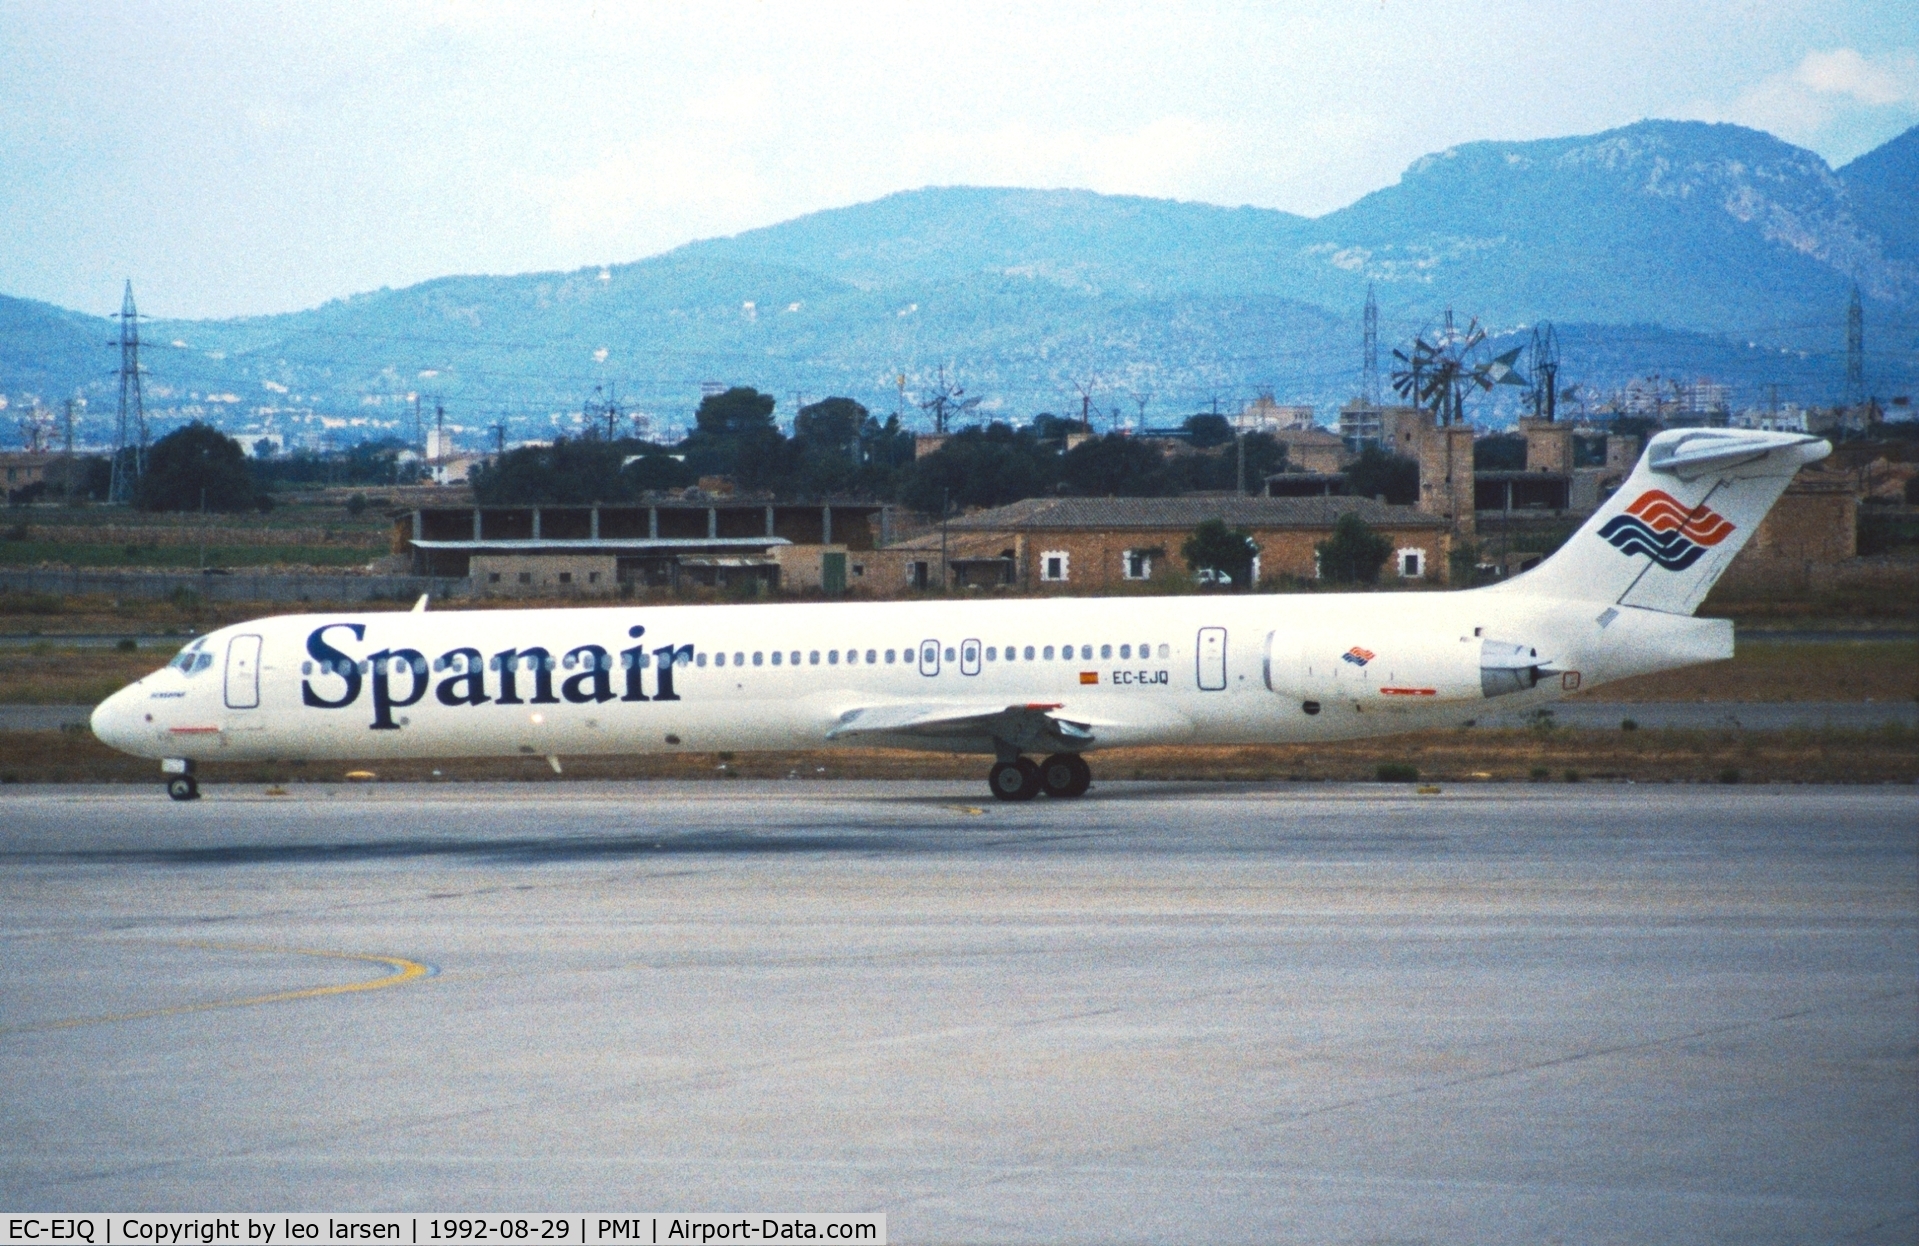 EC-EJQ, 1988 McDonnell Douglas MD 83 C/N 49672, Palma de Mallorca 29.8.1992